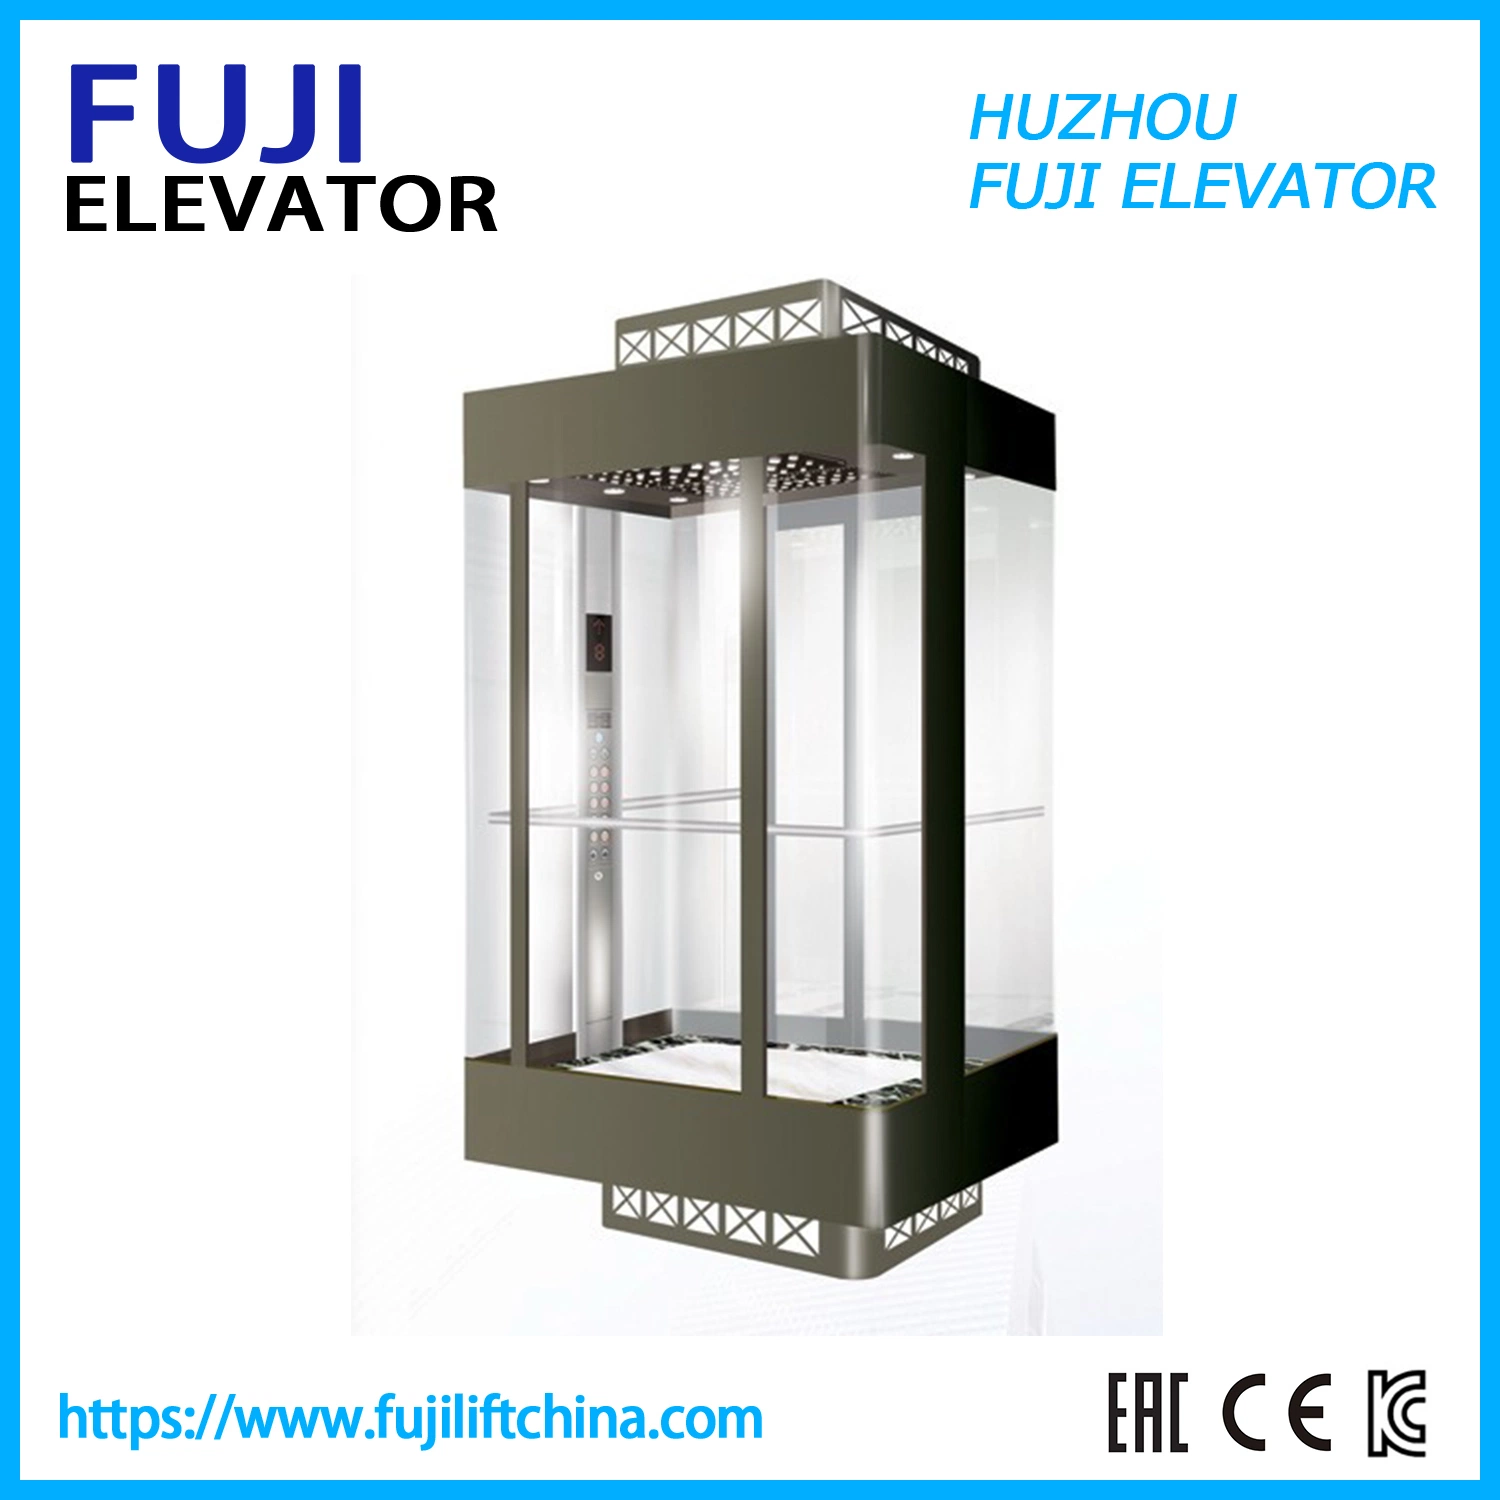 FÁBRICA FUJI elevador panorámico de cristal con elevador de visita turística Home Ascensor Villa Ascensor de pasajeros Ascensor de pasajeros China Ascensor